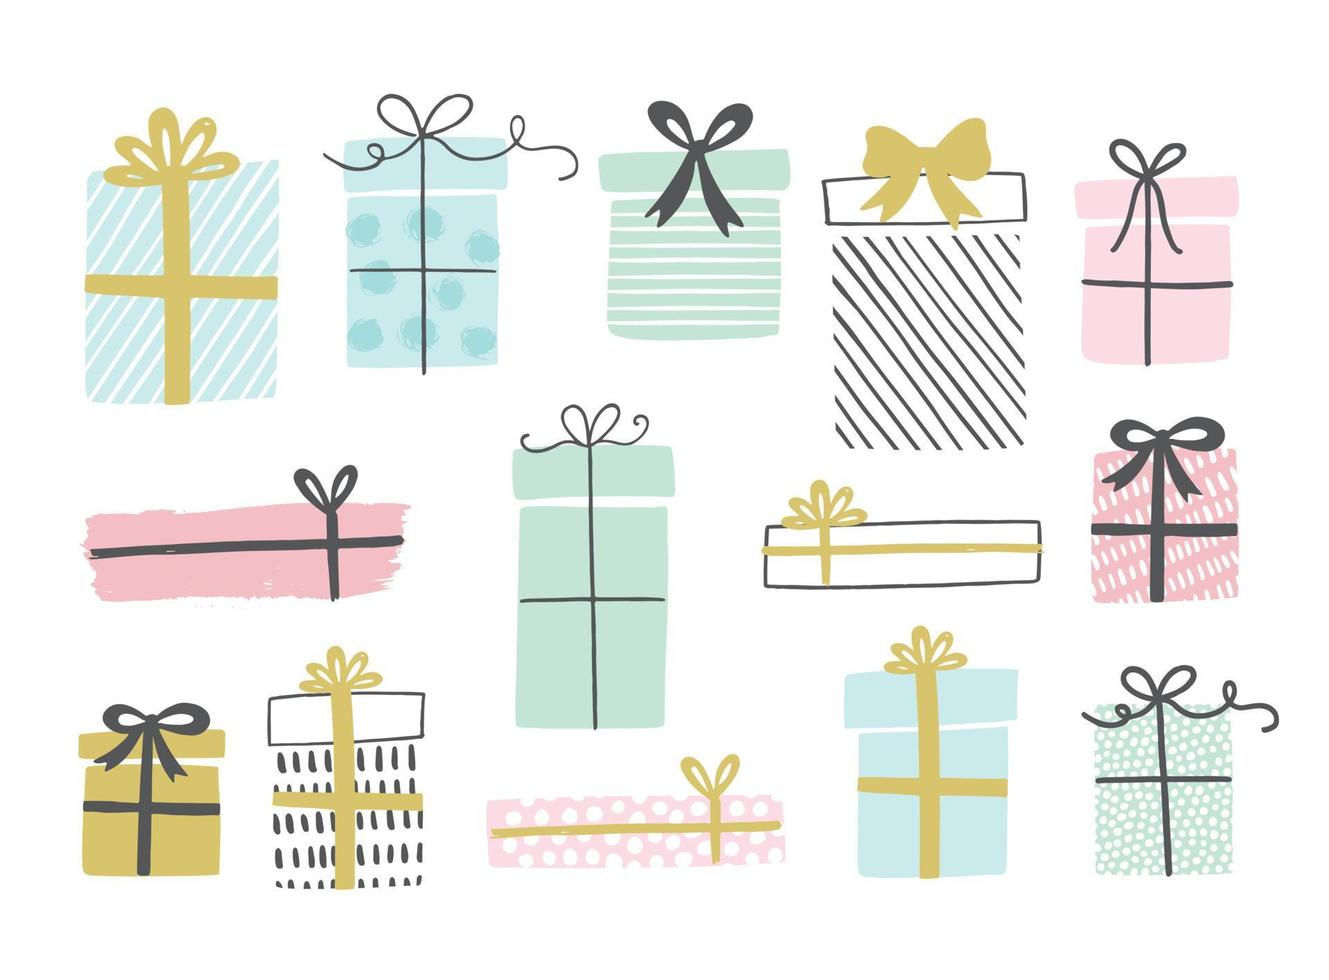 Geschenkboxen, handgezeichneter Doodle-Stil. Geburtstagsparty. Vektorillustration für Grußkarten, Einladungen, Poster. vektor